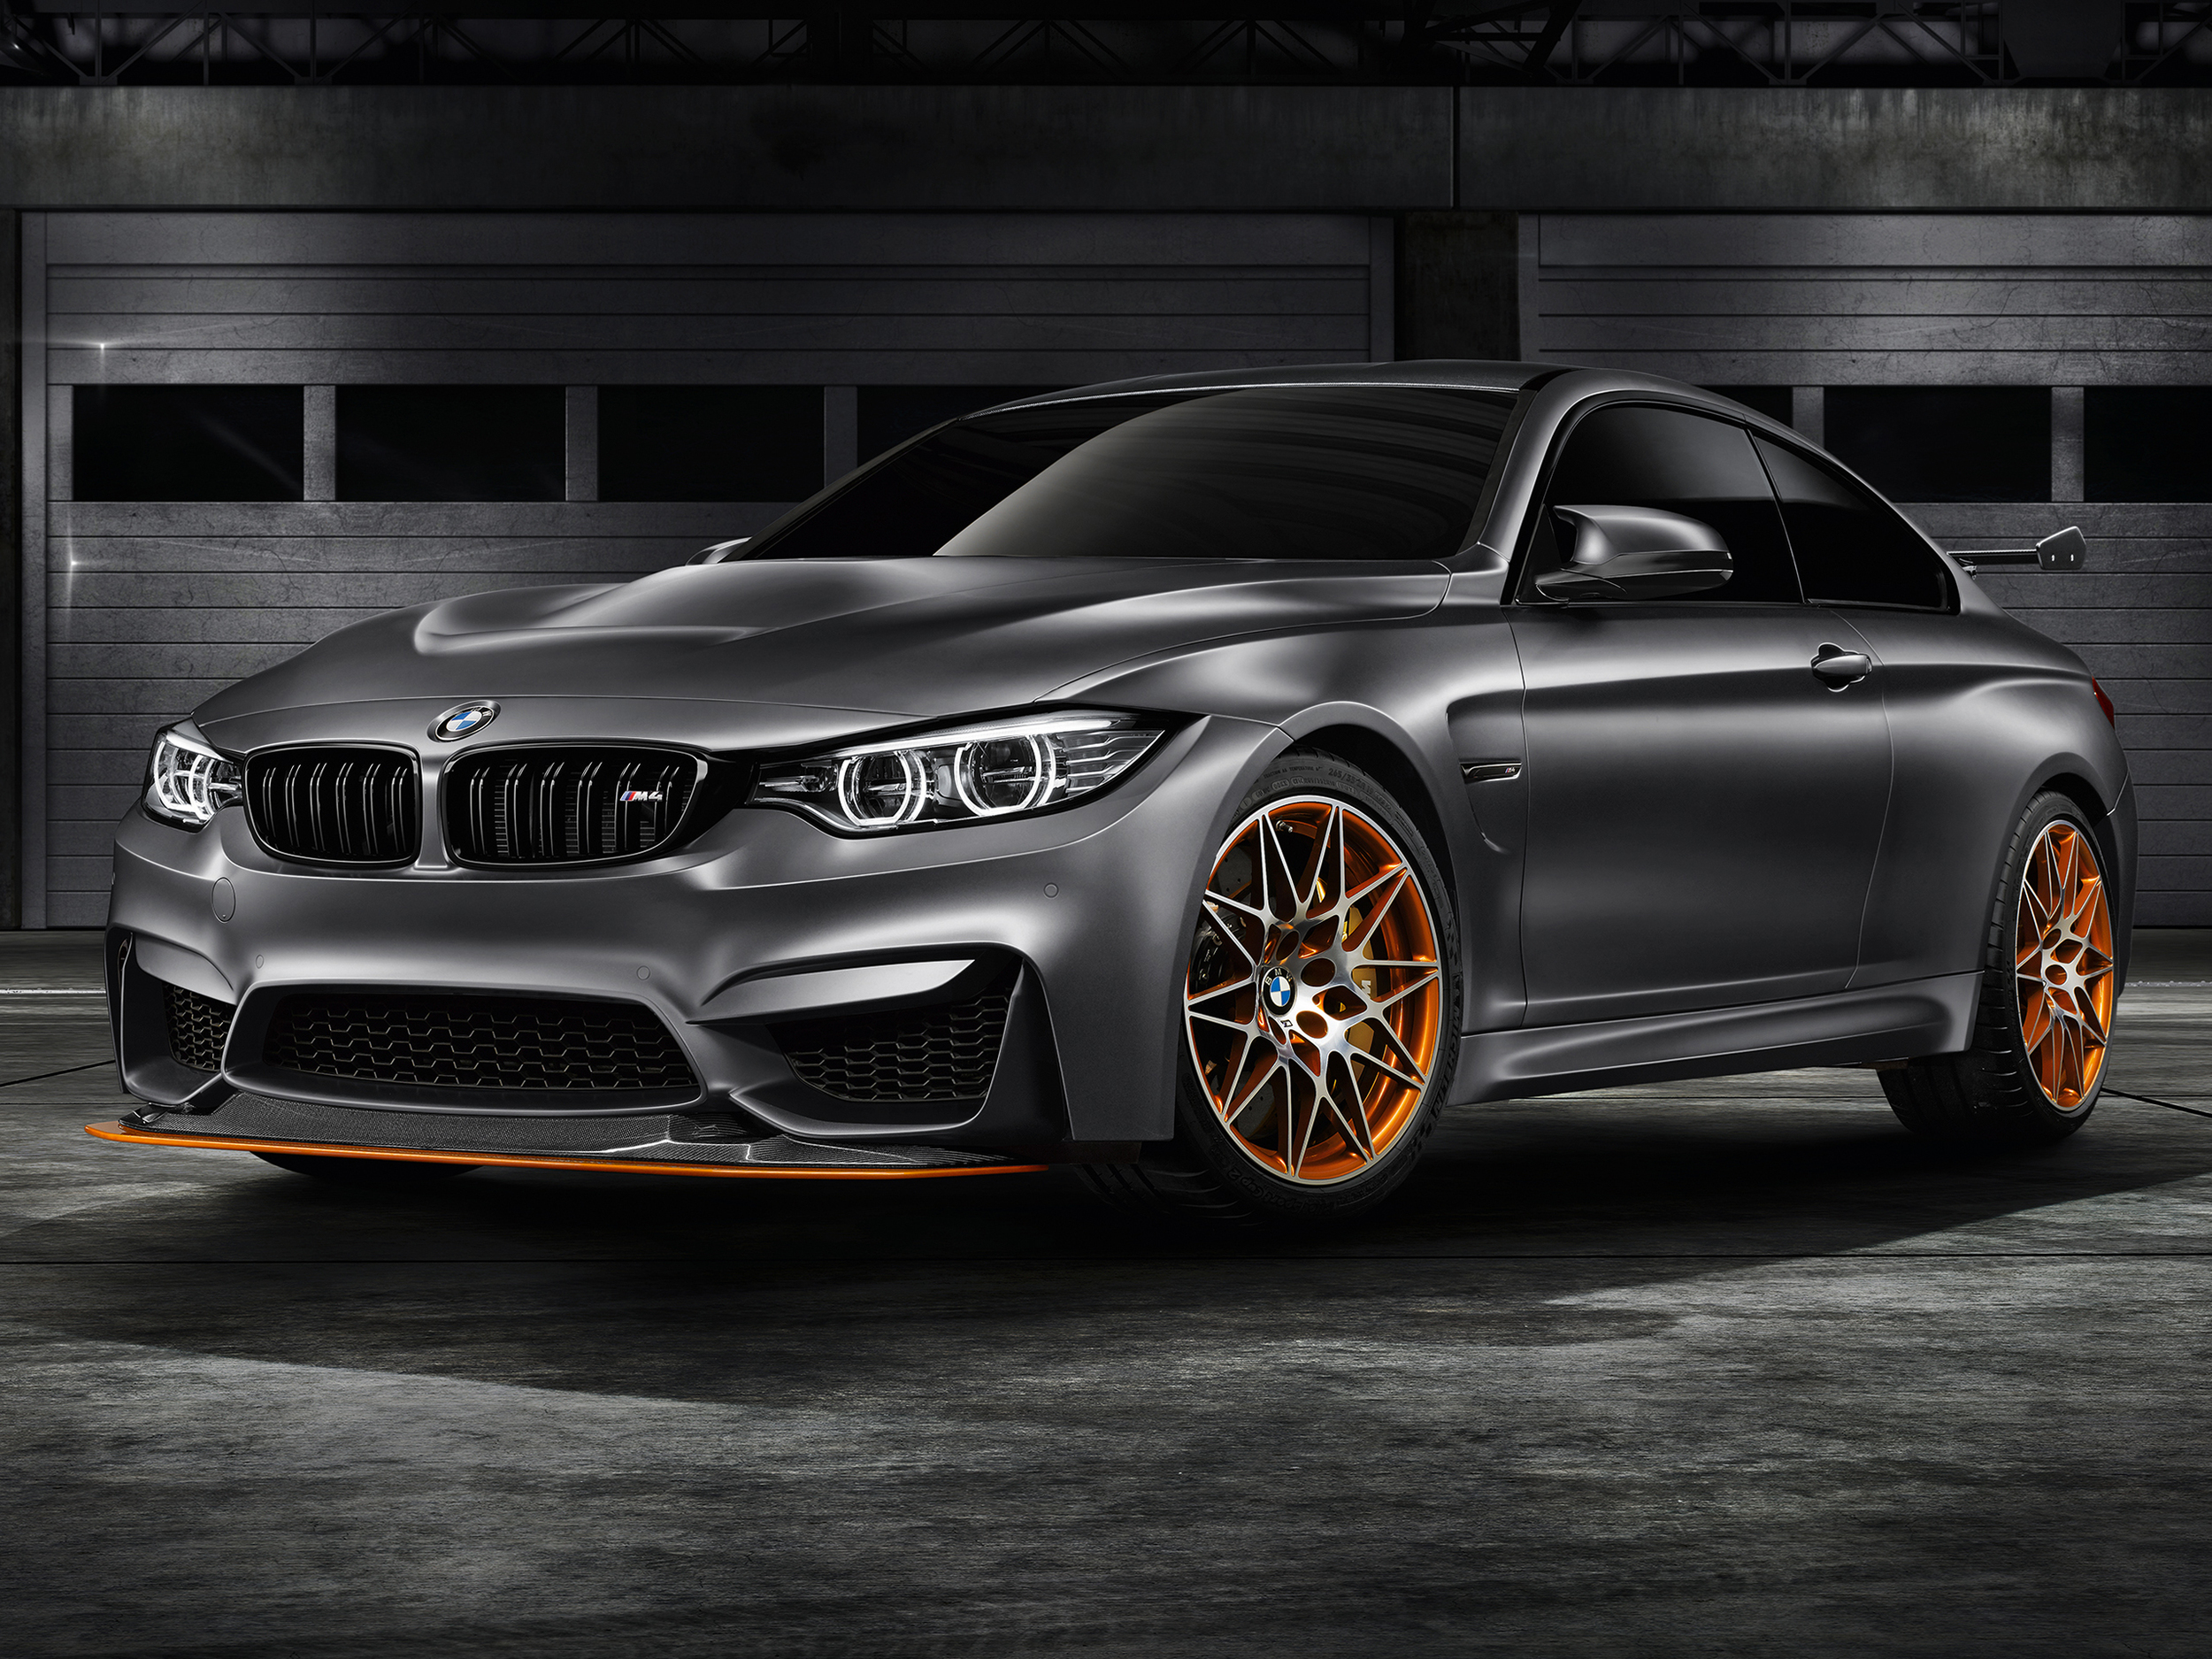 BMW reveals Concept M4 GTS